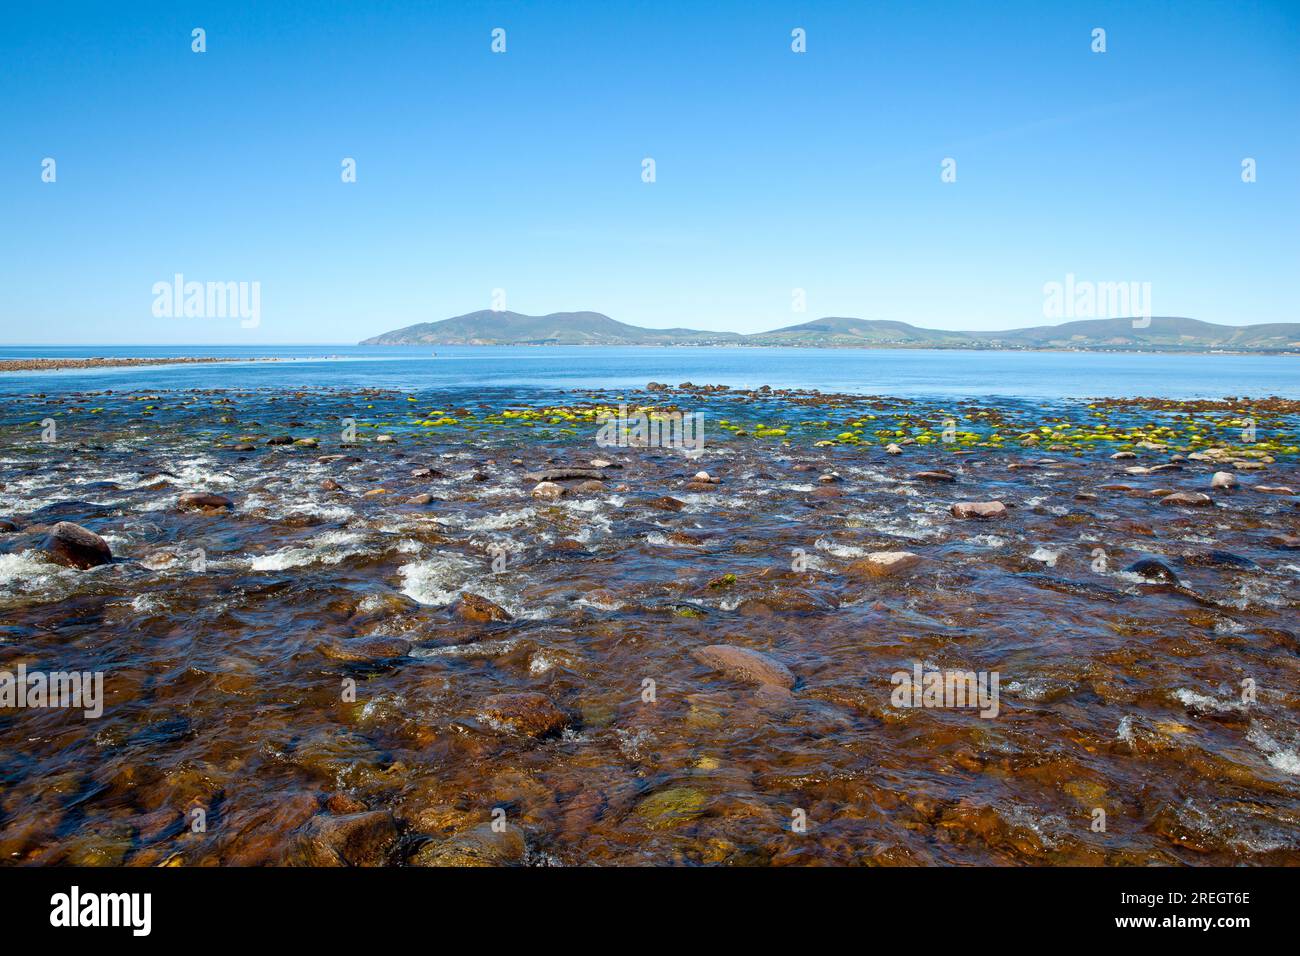 Ballinskelligs Bay, Waterville, comté de Kerry, Irlande, vu de l'endroit où la rivière Currane rejoint la mer. Août 2022. Banque D'Images